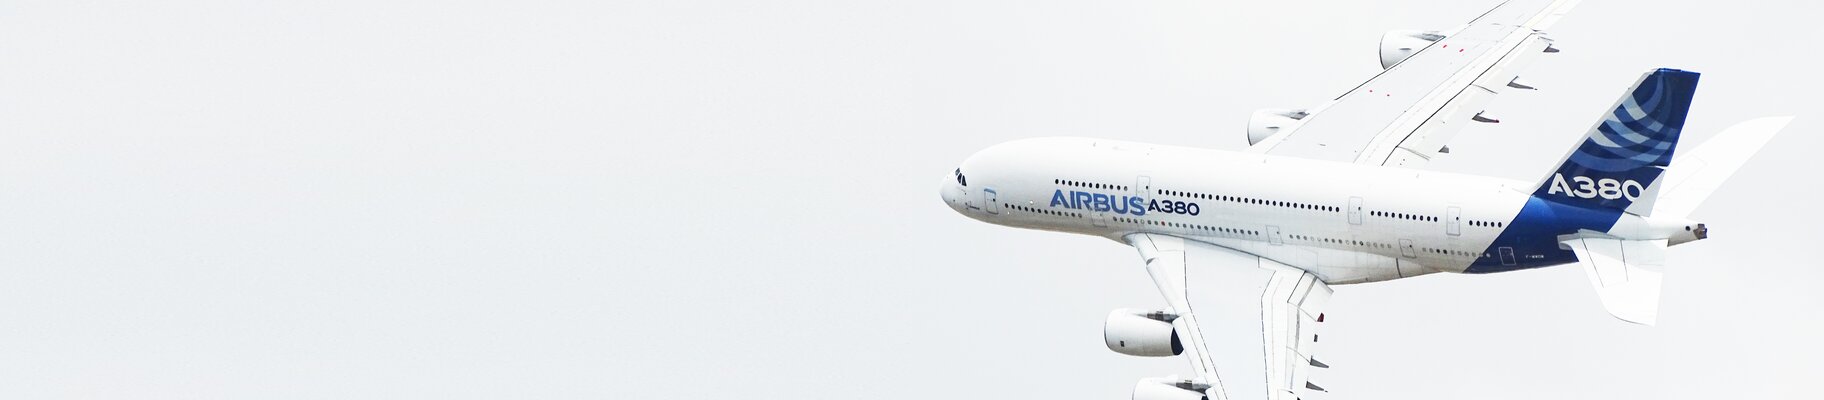 Airbus A380 Flugzeug.